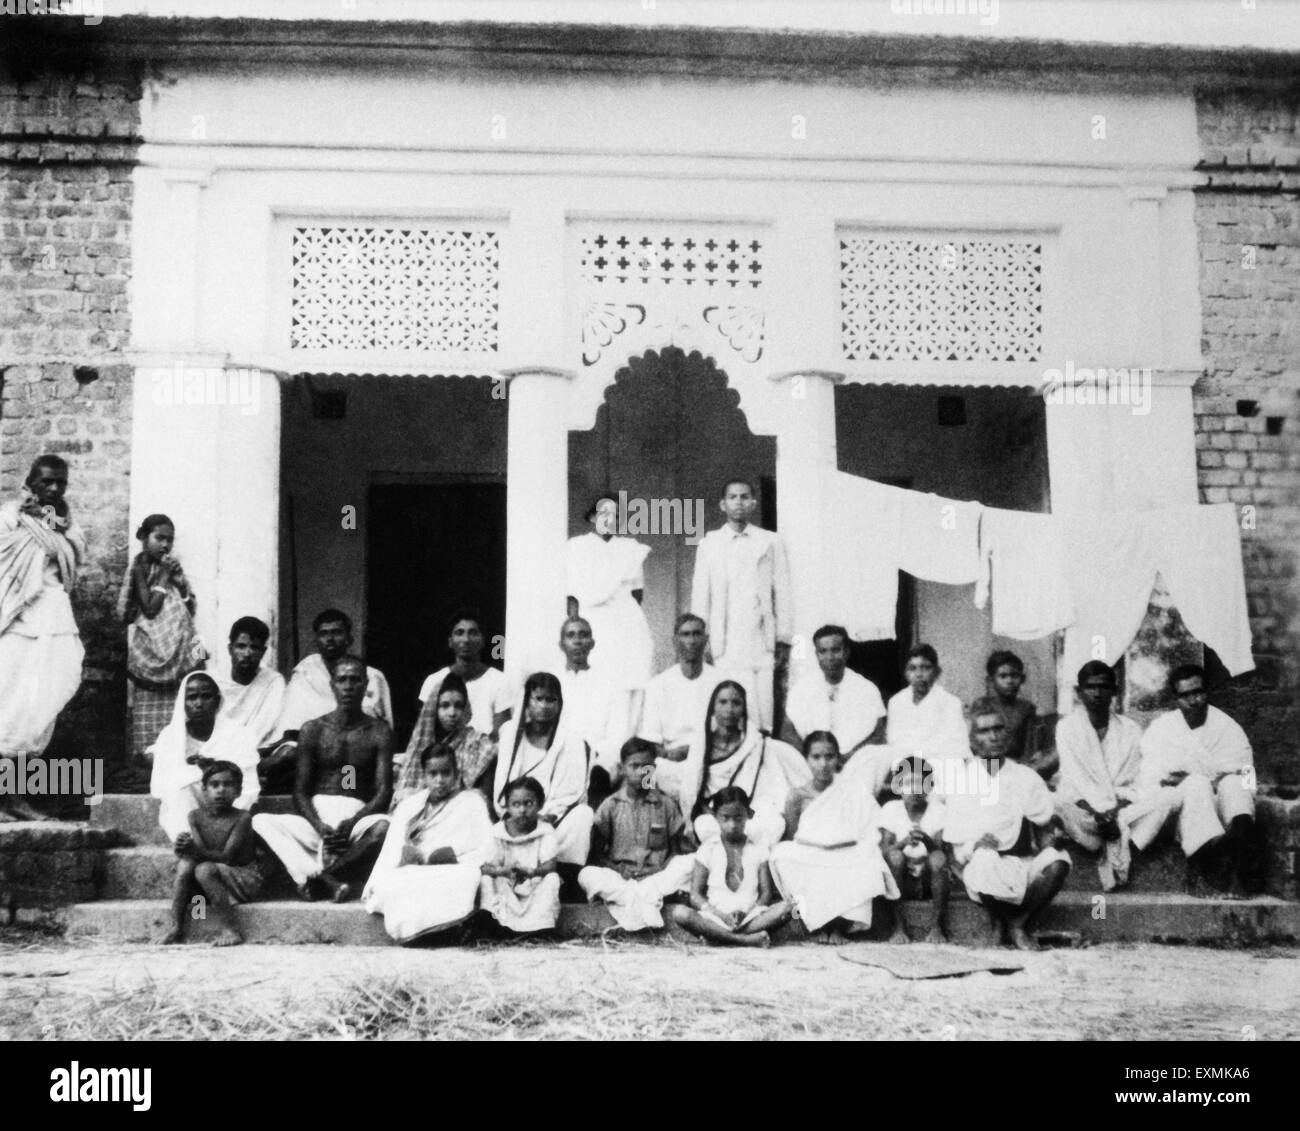 Amtus Salam et les gens du village dans la zone touchée par l'émeute de Noakhali East Bengal ; novembre 1946 ; Inde PAS DE MR Banque D'Images